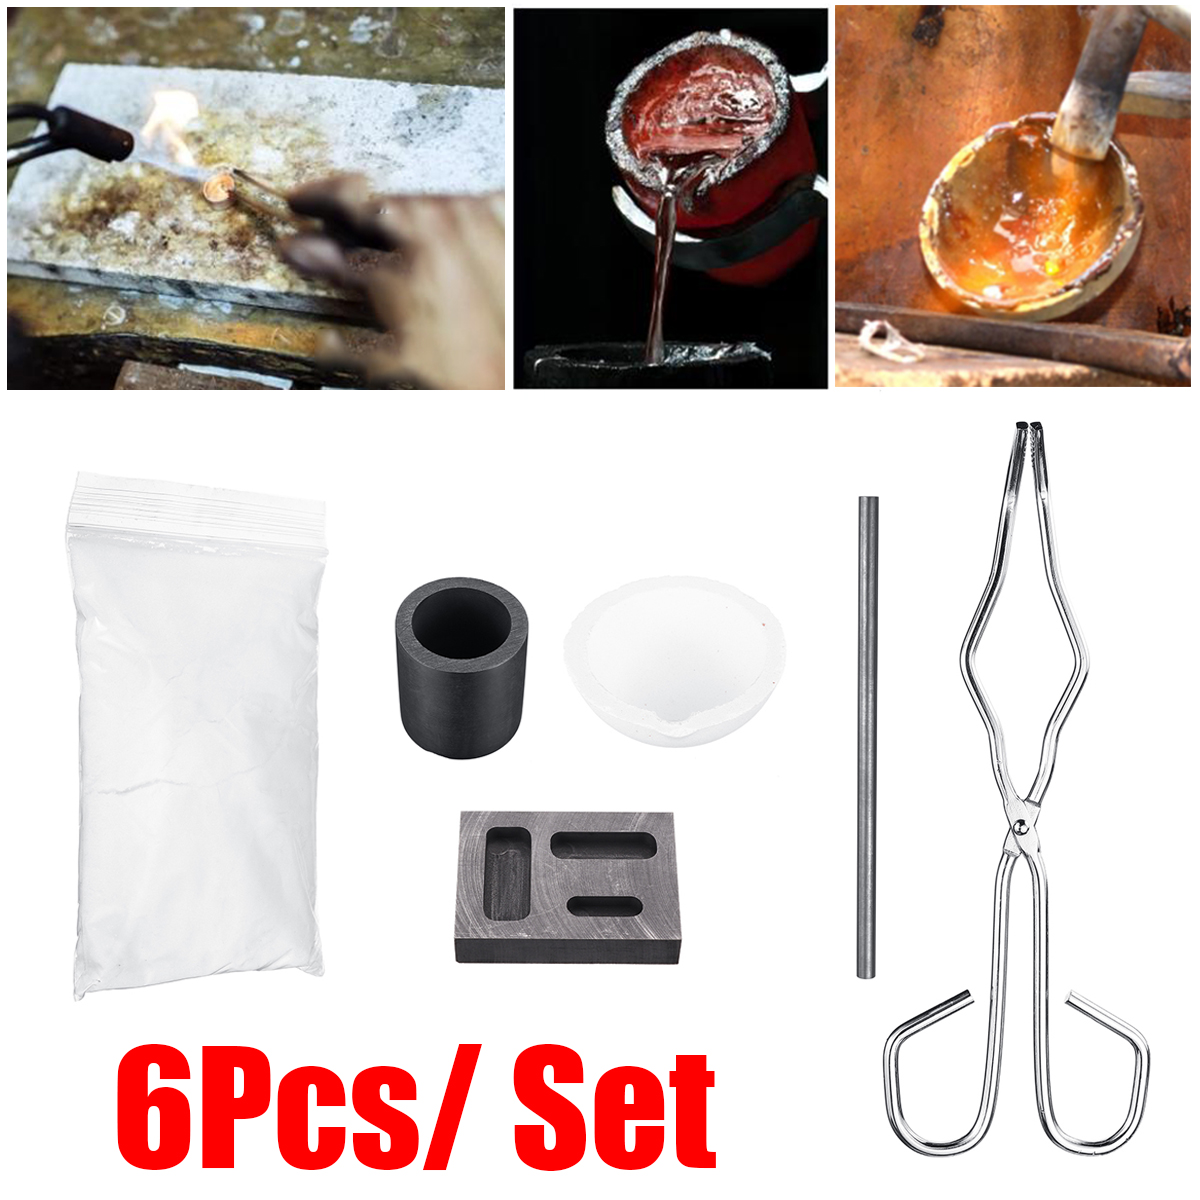 6Pcs Torch Melting Kit Graphite Crucible Tong Rod Graphite Ingot Mold Set